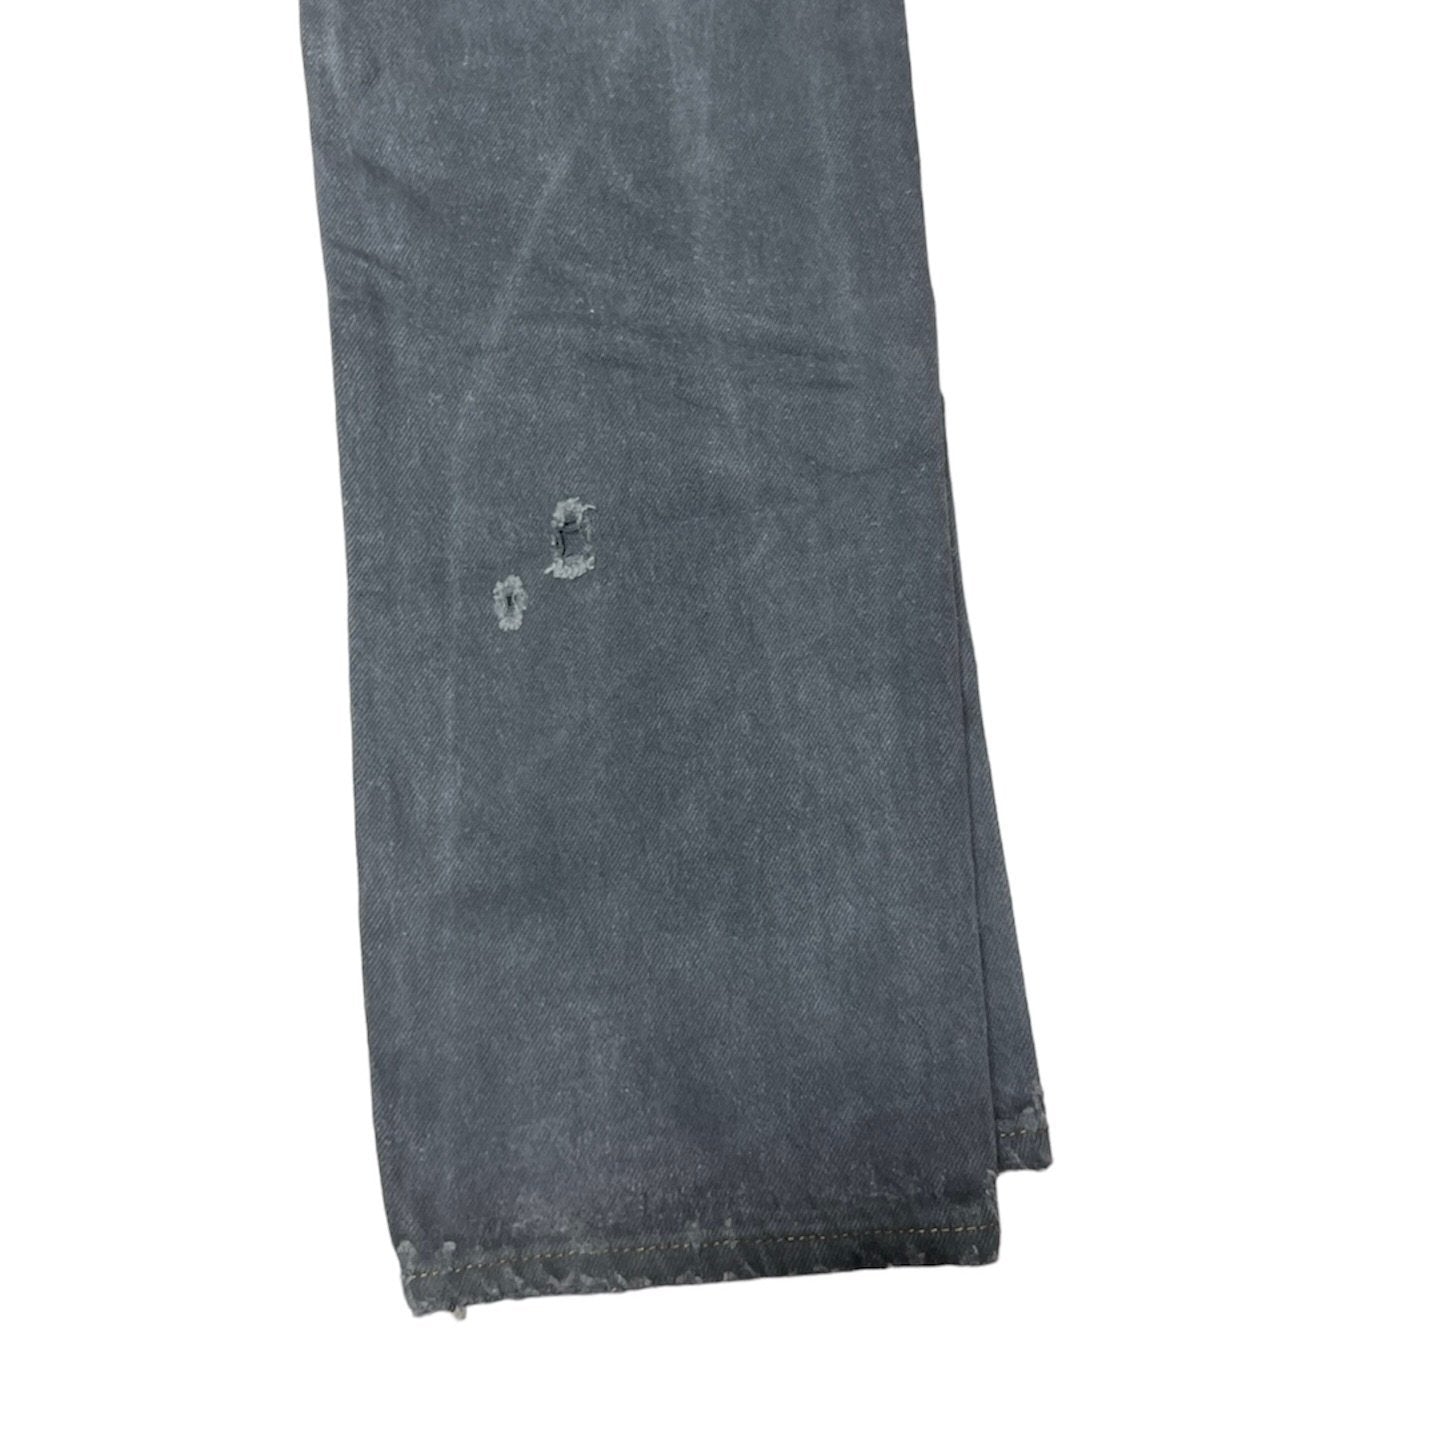 Vintage Levis 501 Grey Jeans (W26/L30)